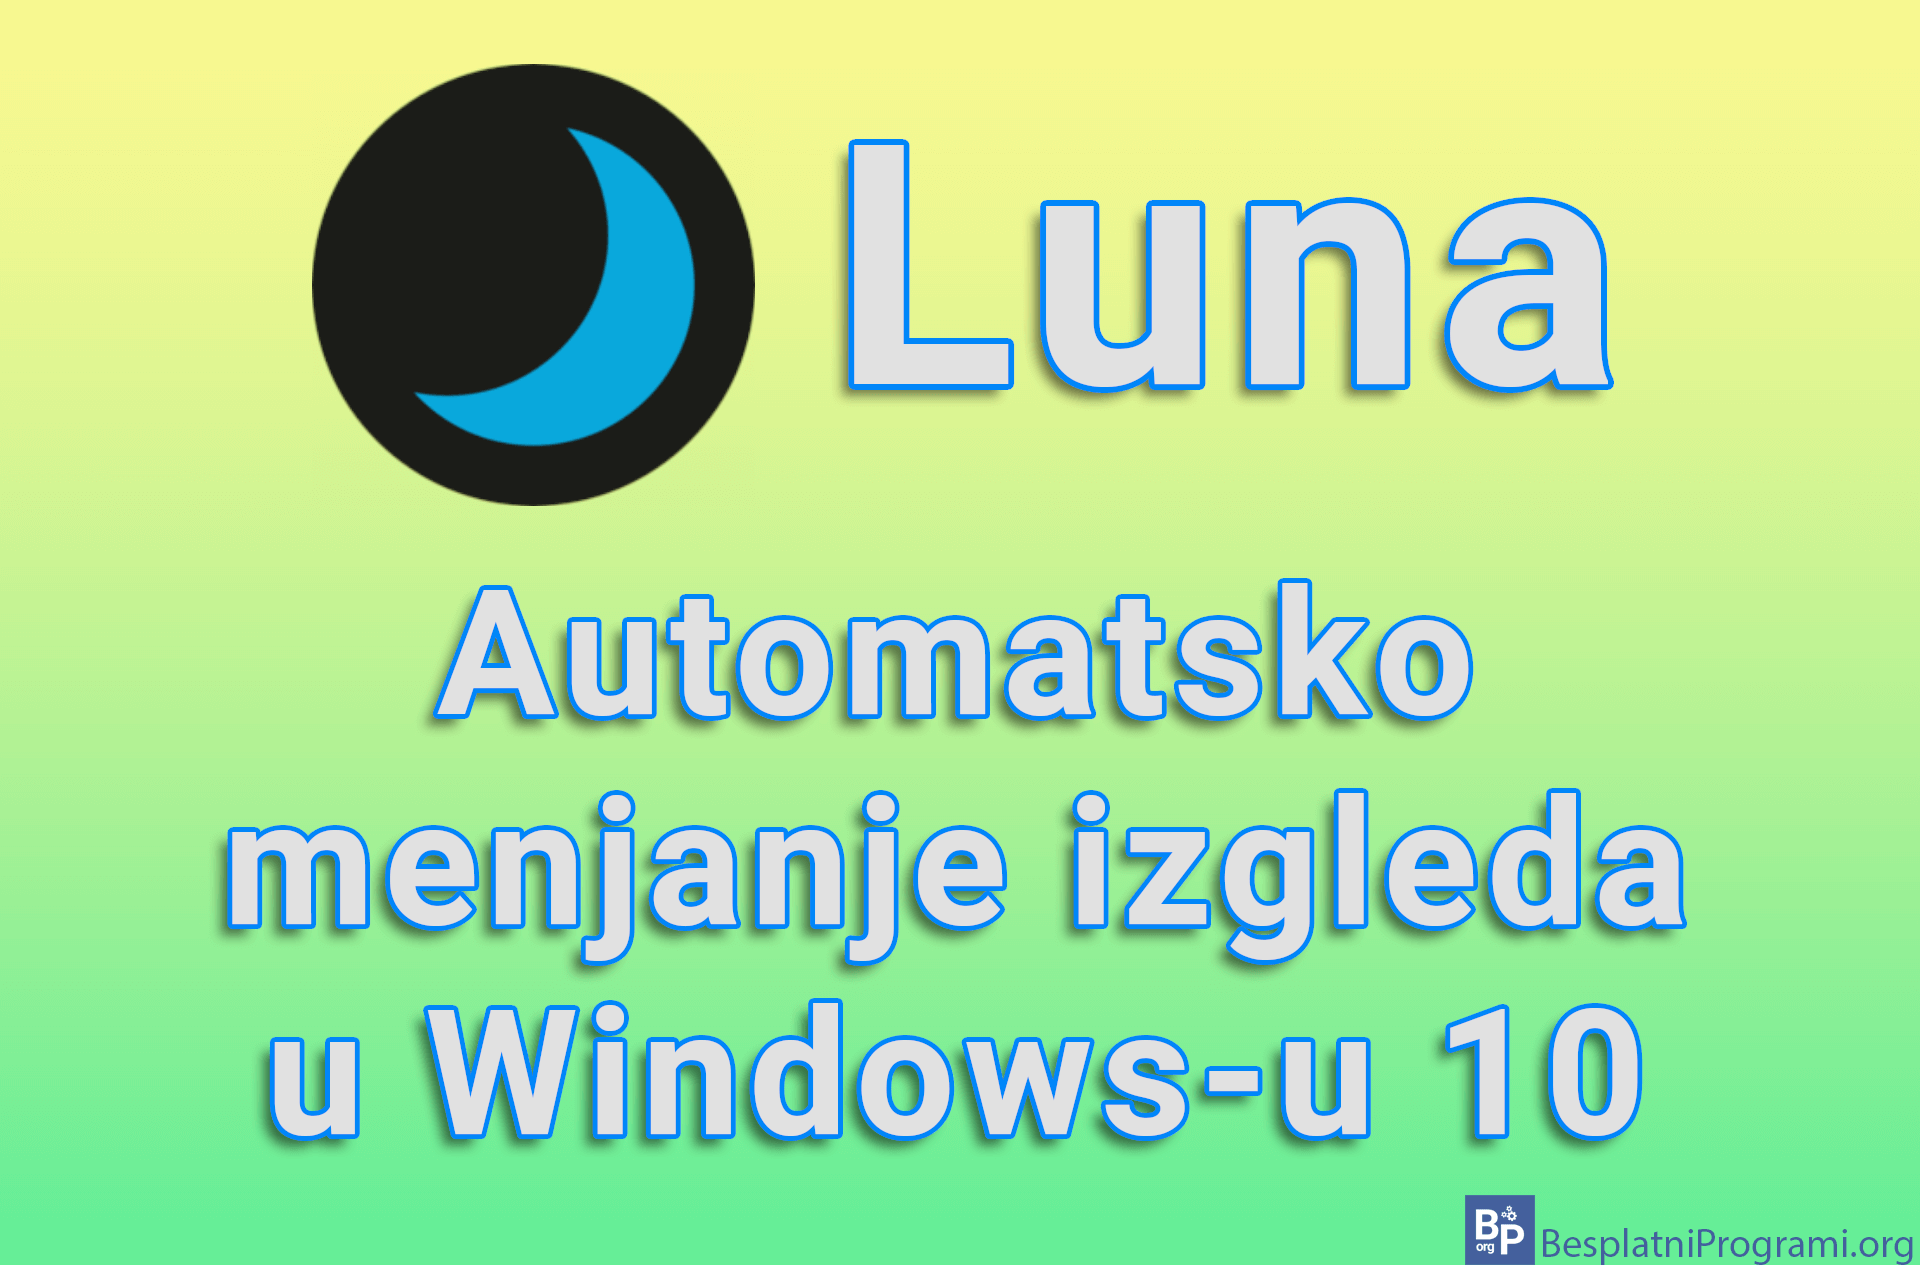 Luna - Automatsko menjanje izgleda u Windows-u 10